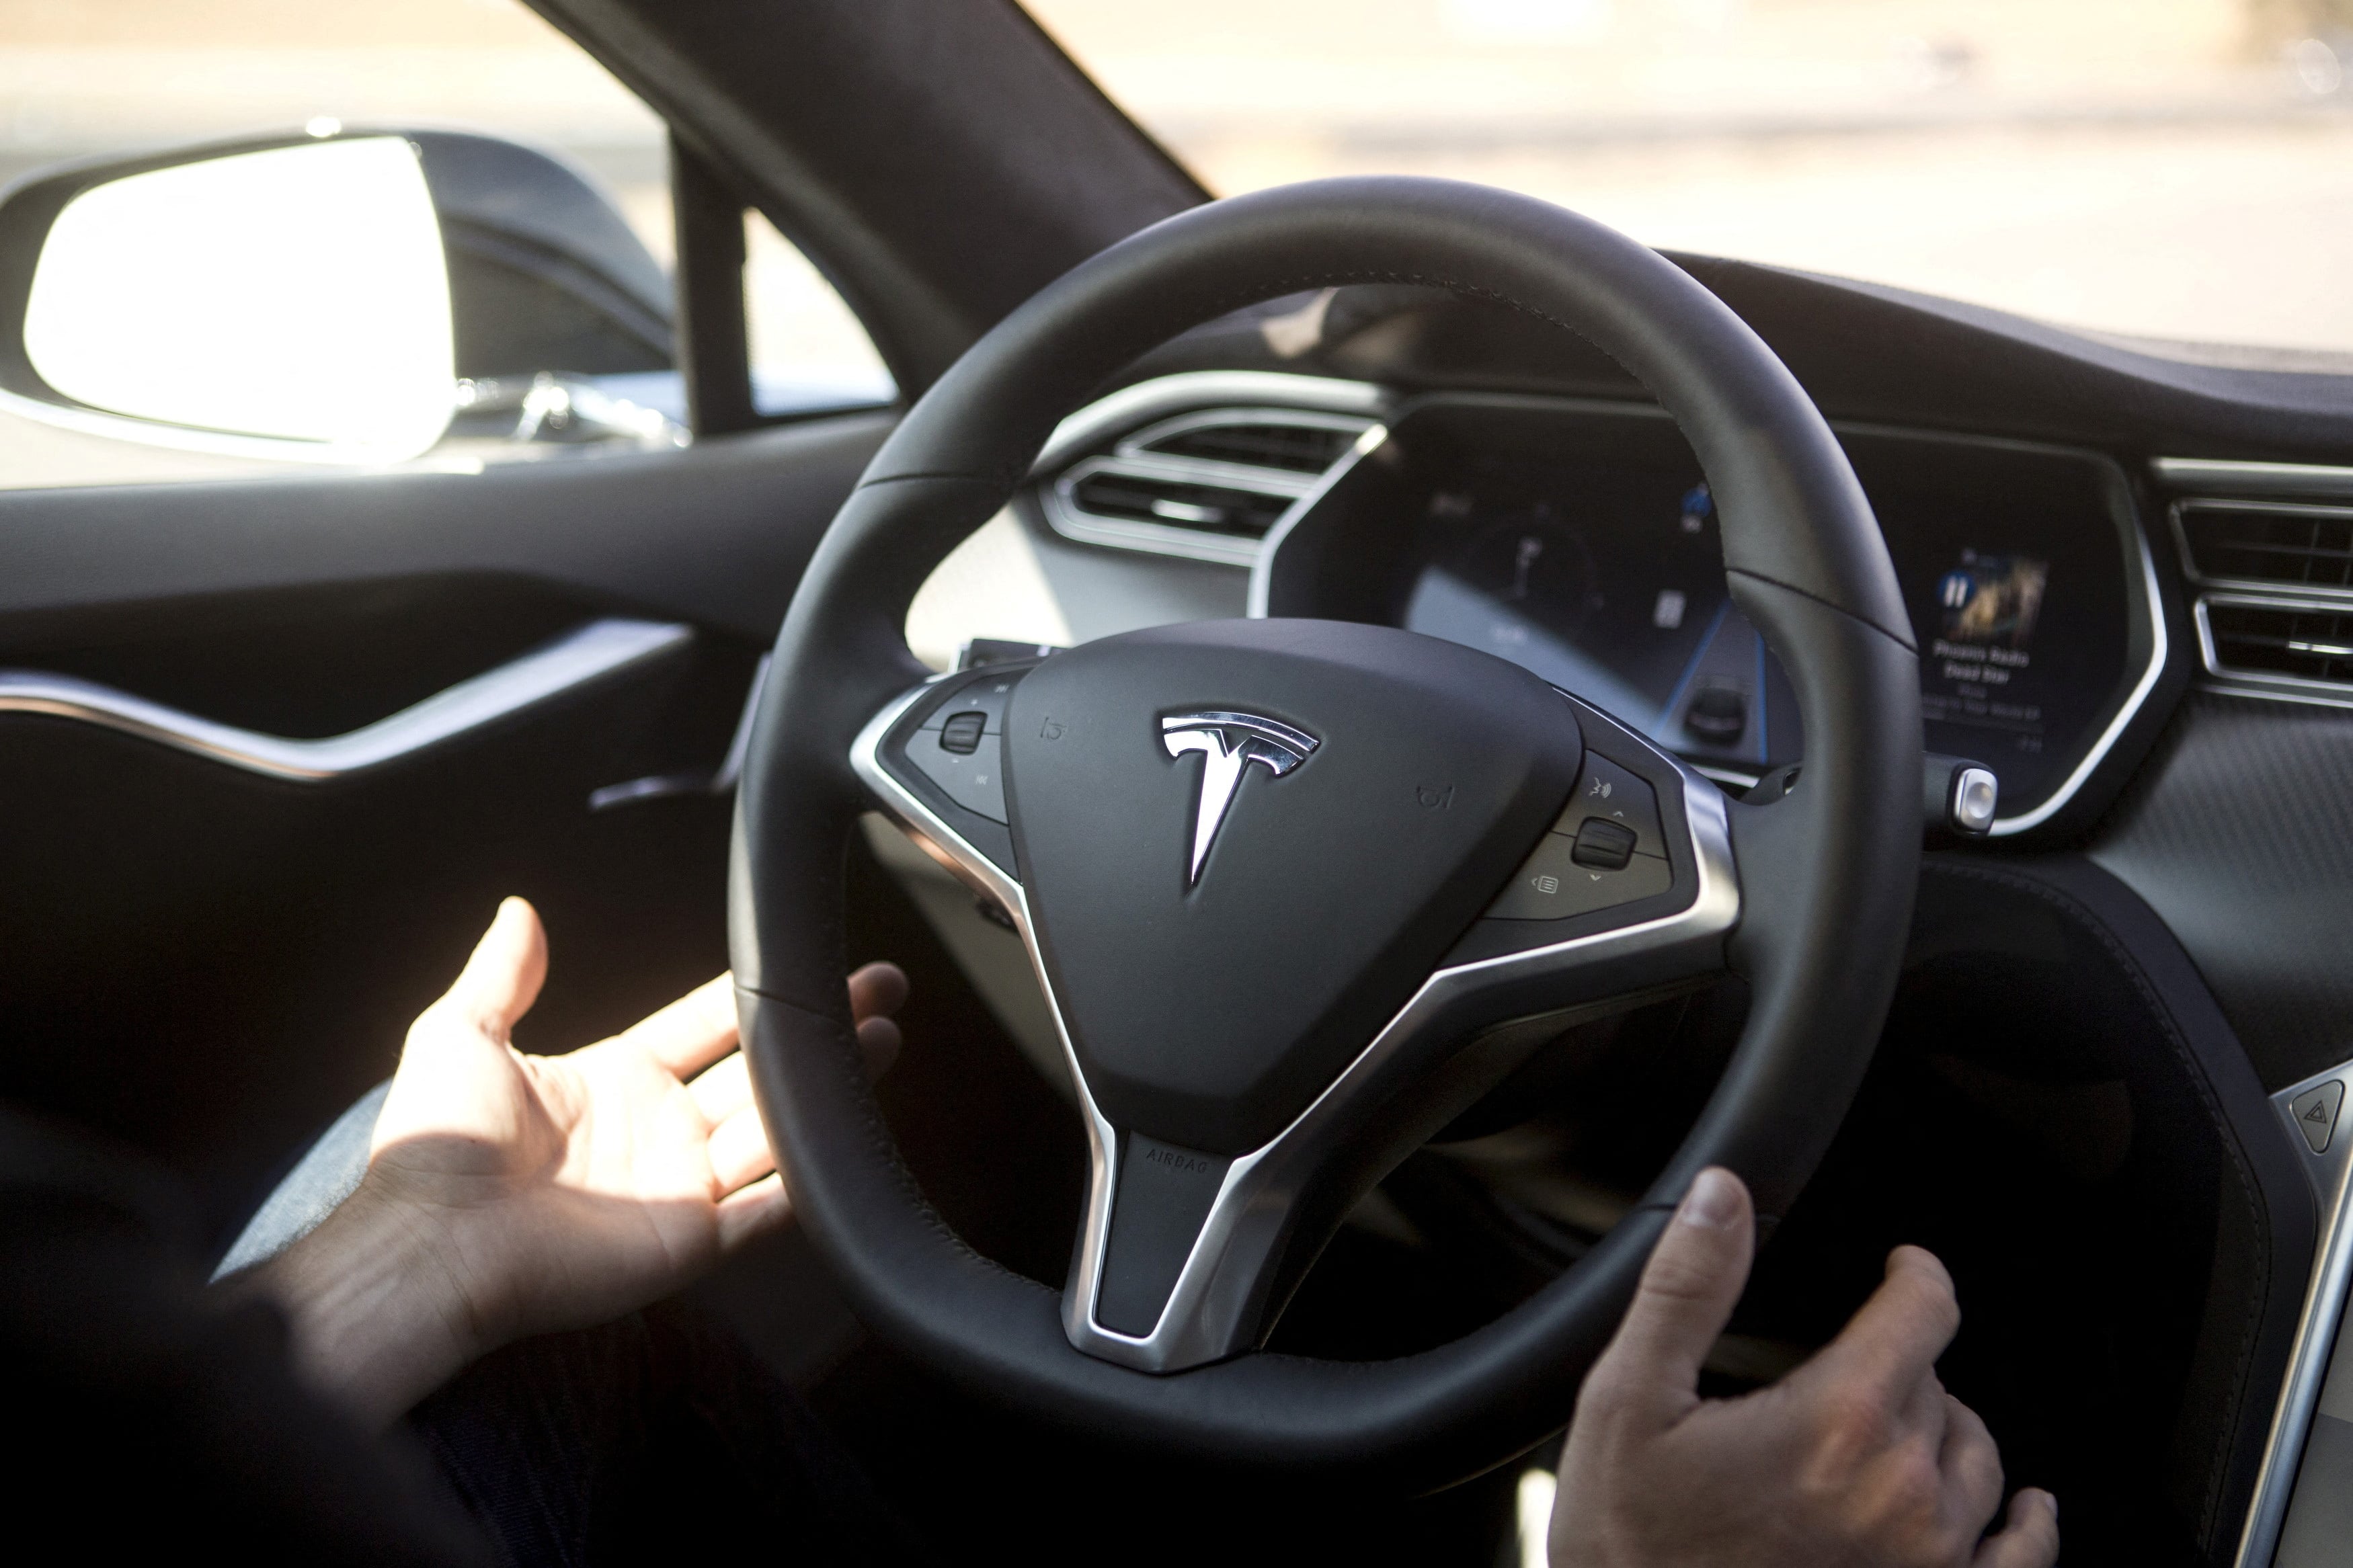 El modelo S de Tesla presenta fallos relacionados con el cinturón de seguridad. REUTERS/Beck Diefenbach/File Photo